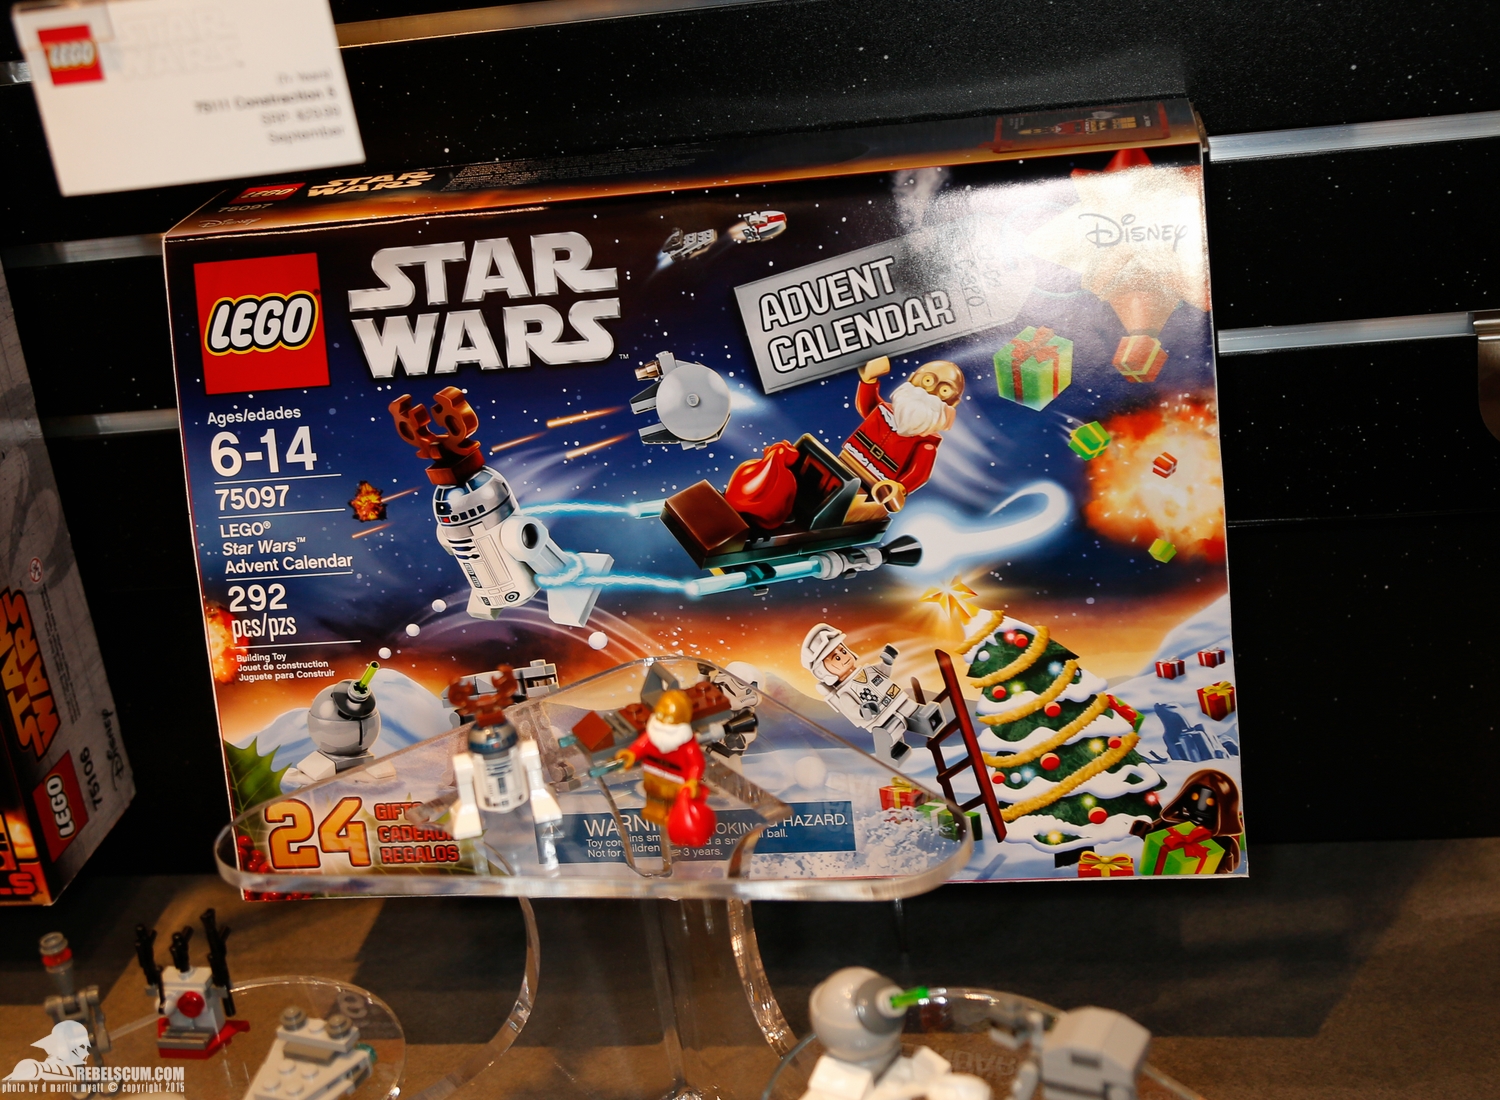 2015-International-Toy-Fair-Star-Wars-Lego-120.jpg